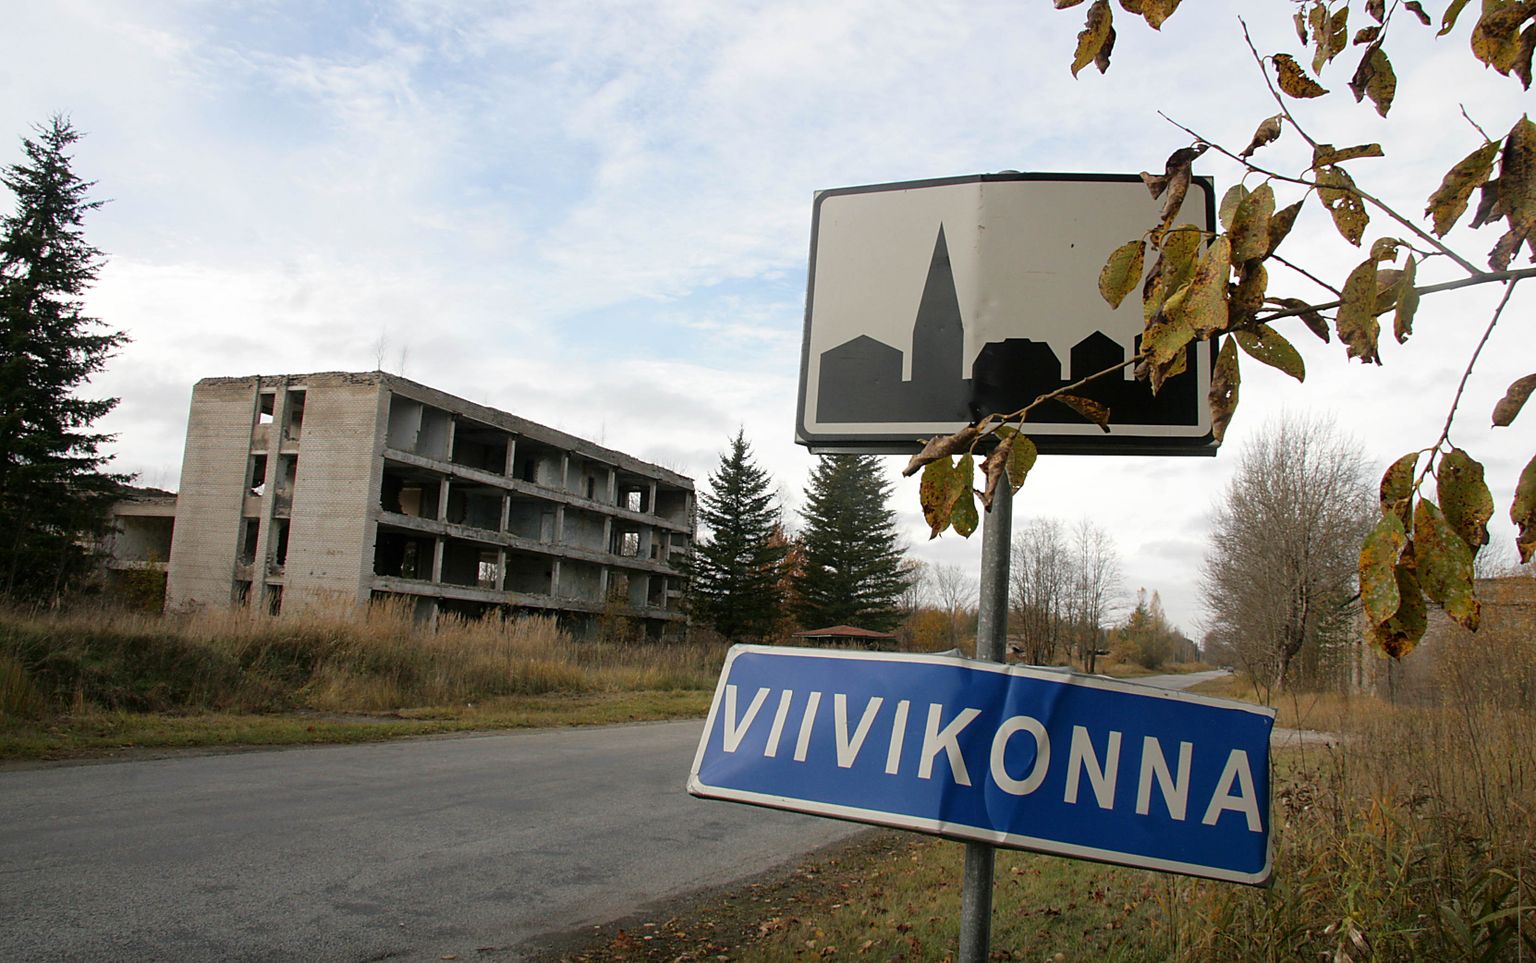 Elanike poolt suures osas hüljatud Viivikonna asula põhjustas viie aasta pikkused kohtulahingud Kohtla-Järve ja Narva-Jõesuu linna vahel, nüüd on võitja selgunud.